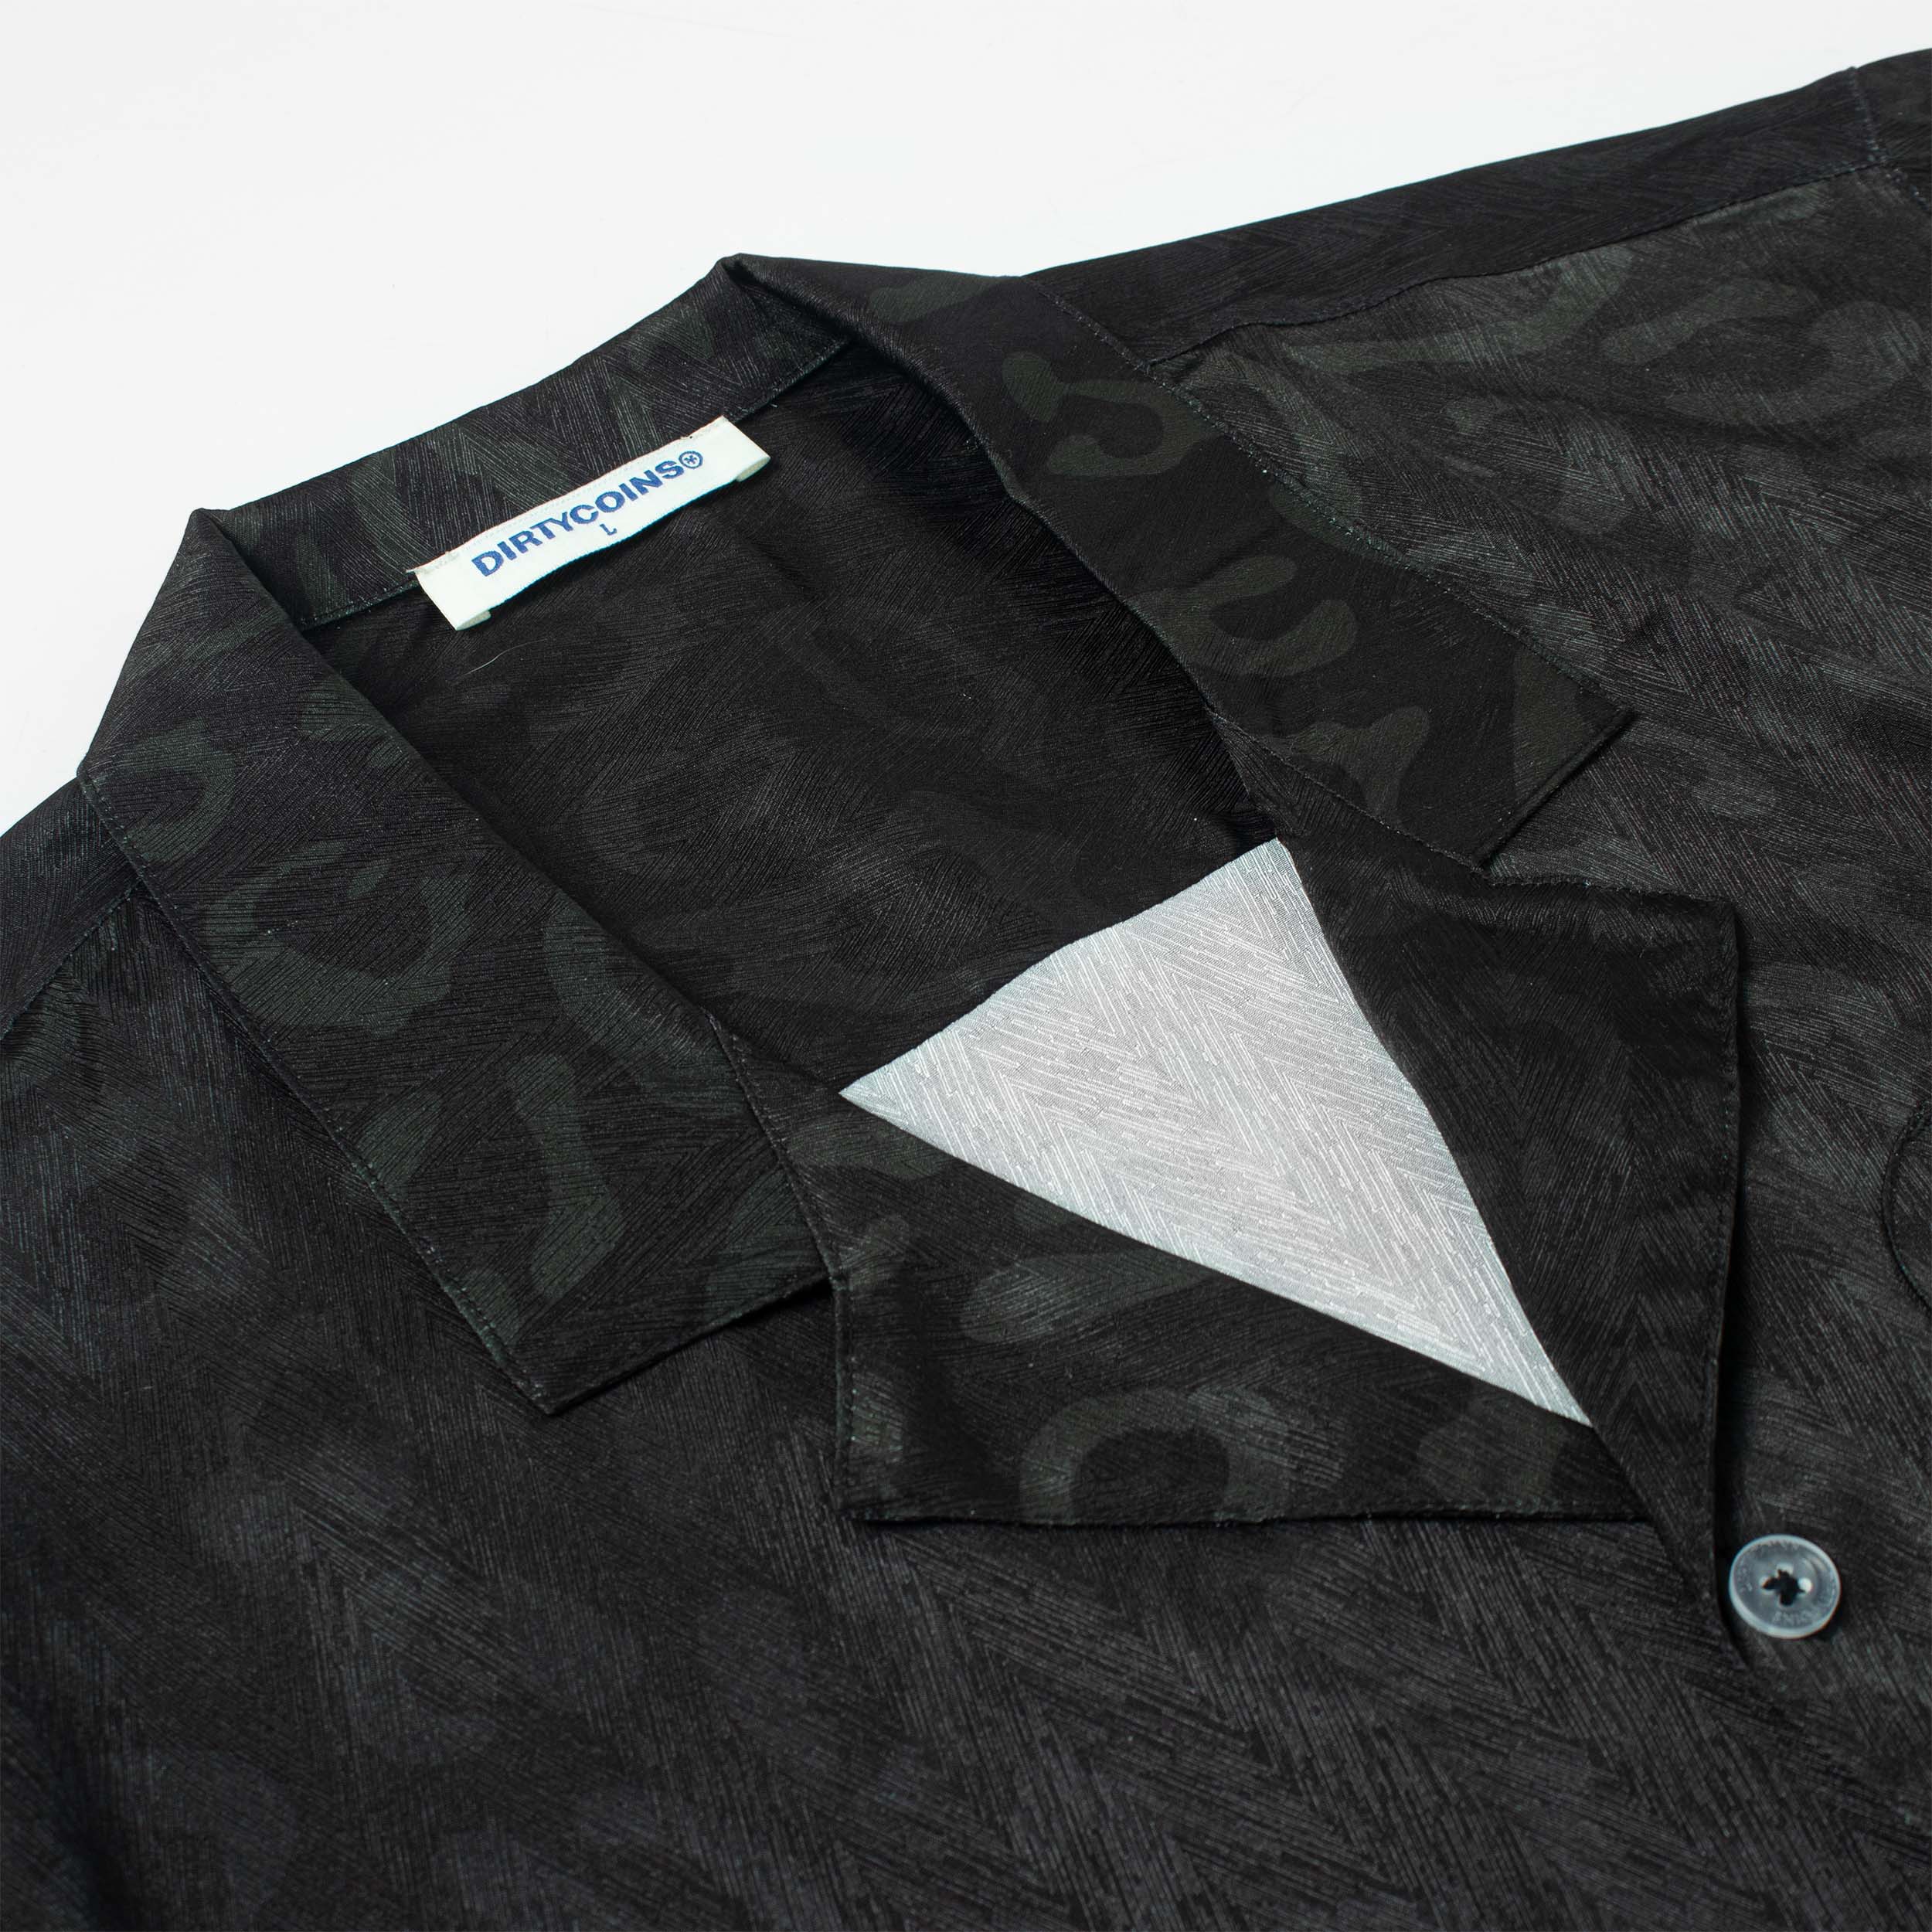 Áo Sơmi [Dirtycoins x B Ray] Leopard All Print Shirt - Black